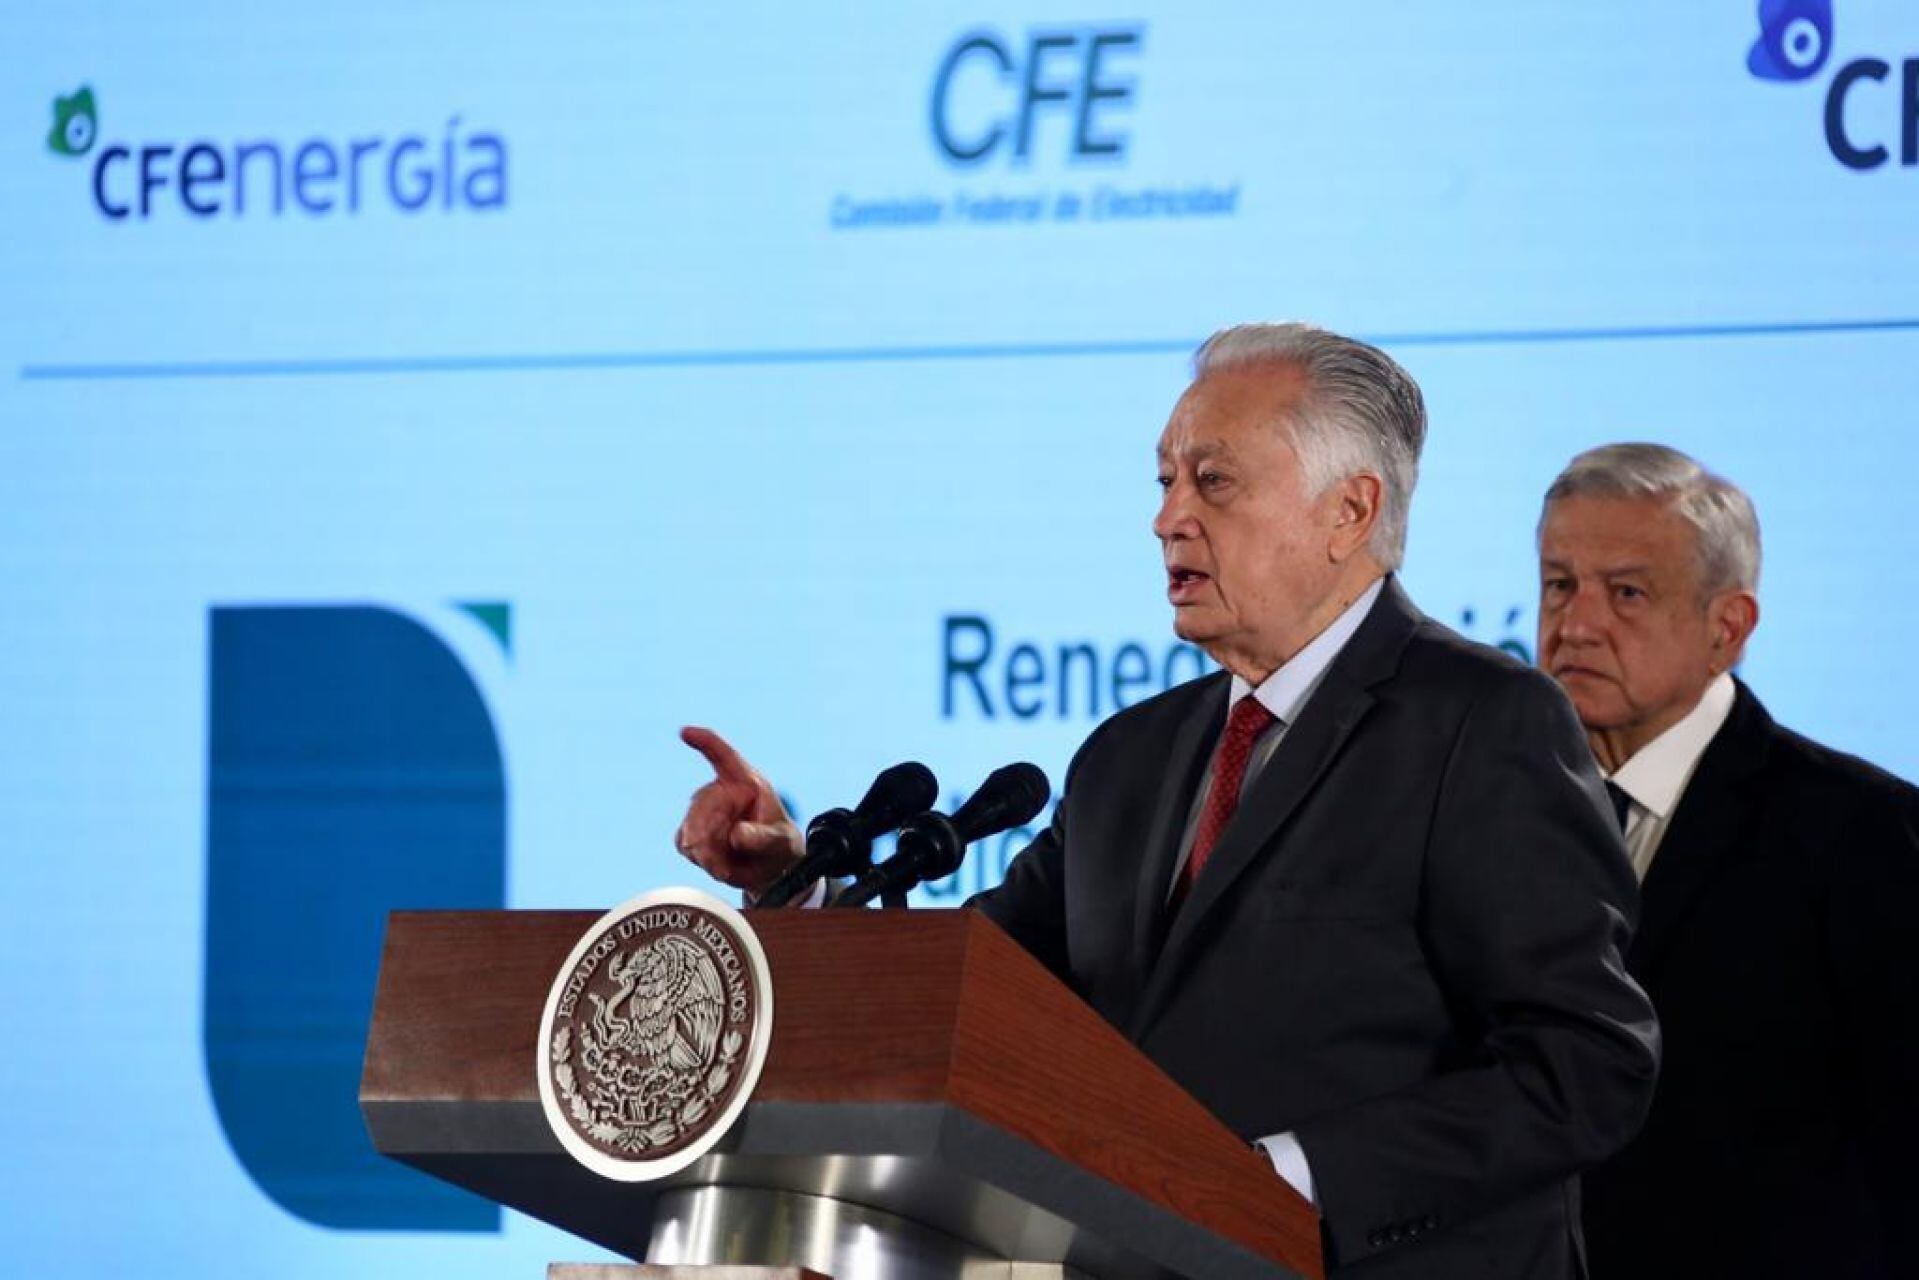 Reforma eléctrica de AMLO: No hay que convertir a México en una vergüenza internacional, pide Coparmex